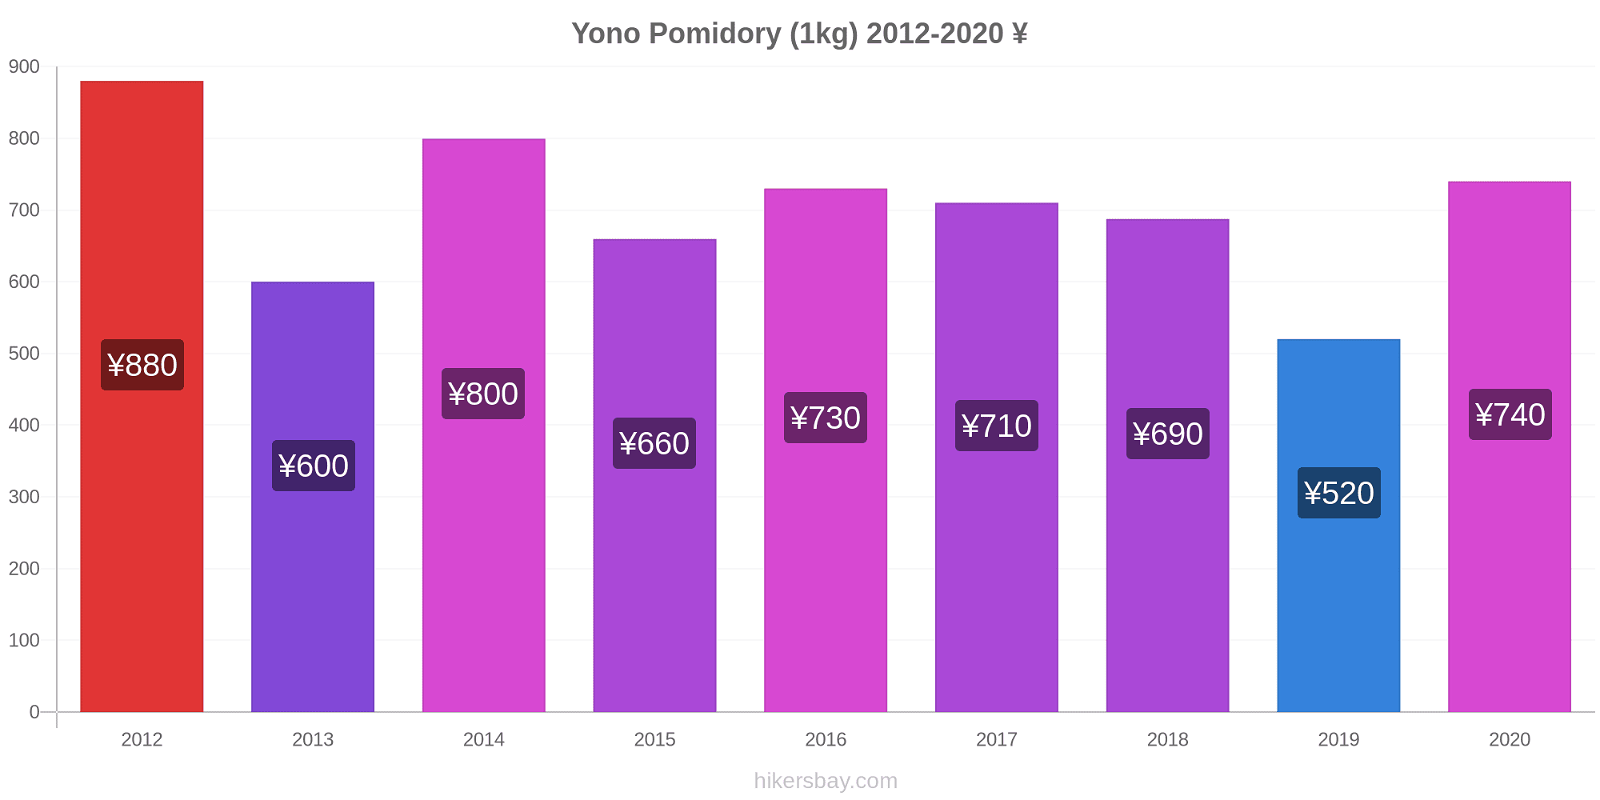 Yono zmiany cen Pomidory (1kg) hikersbay.com